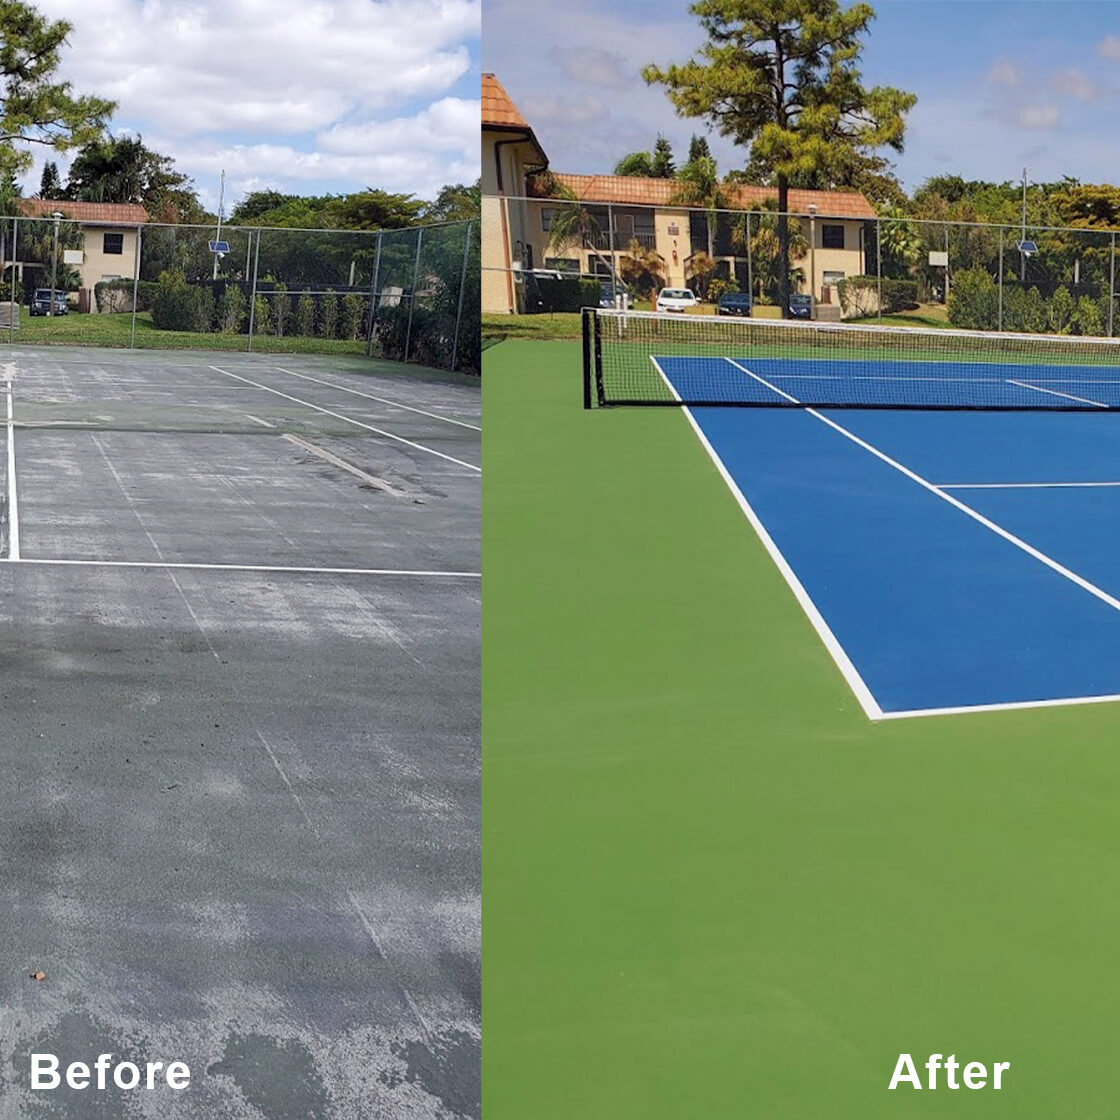 Asphalt Court Before and After Resurfacing - PTCS Florida